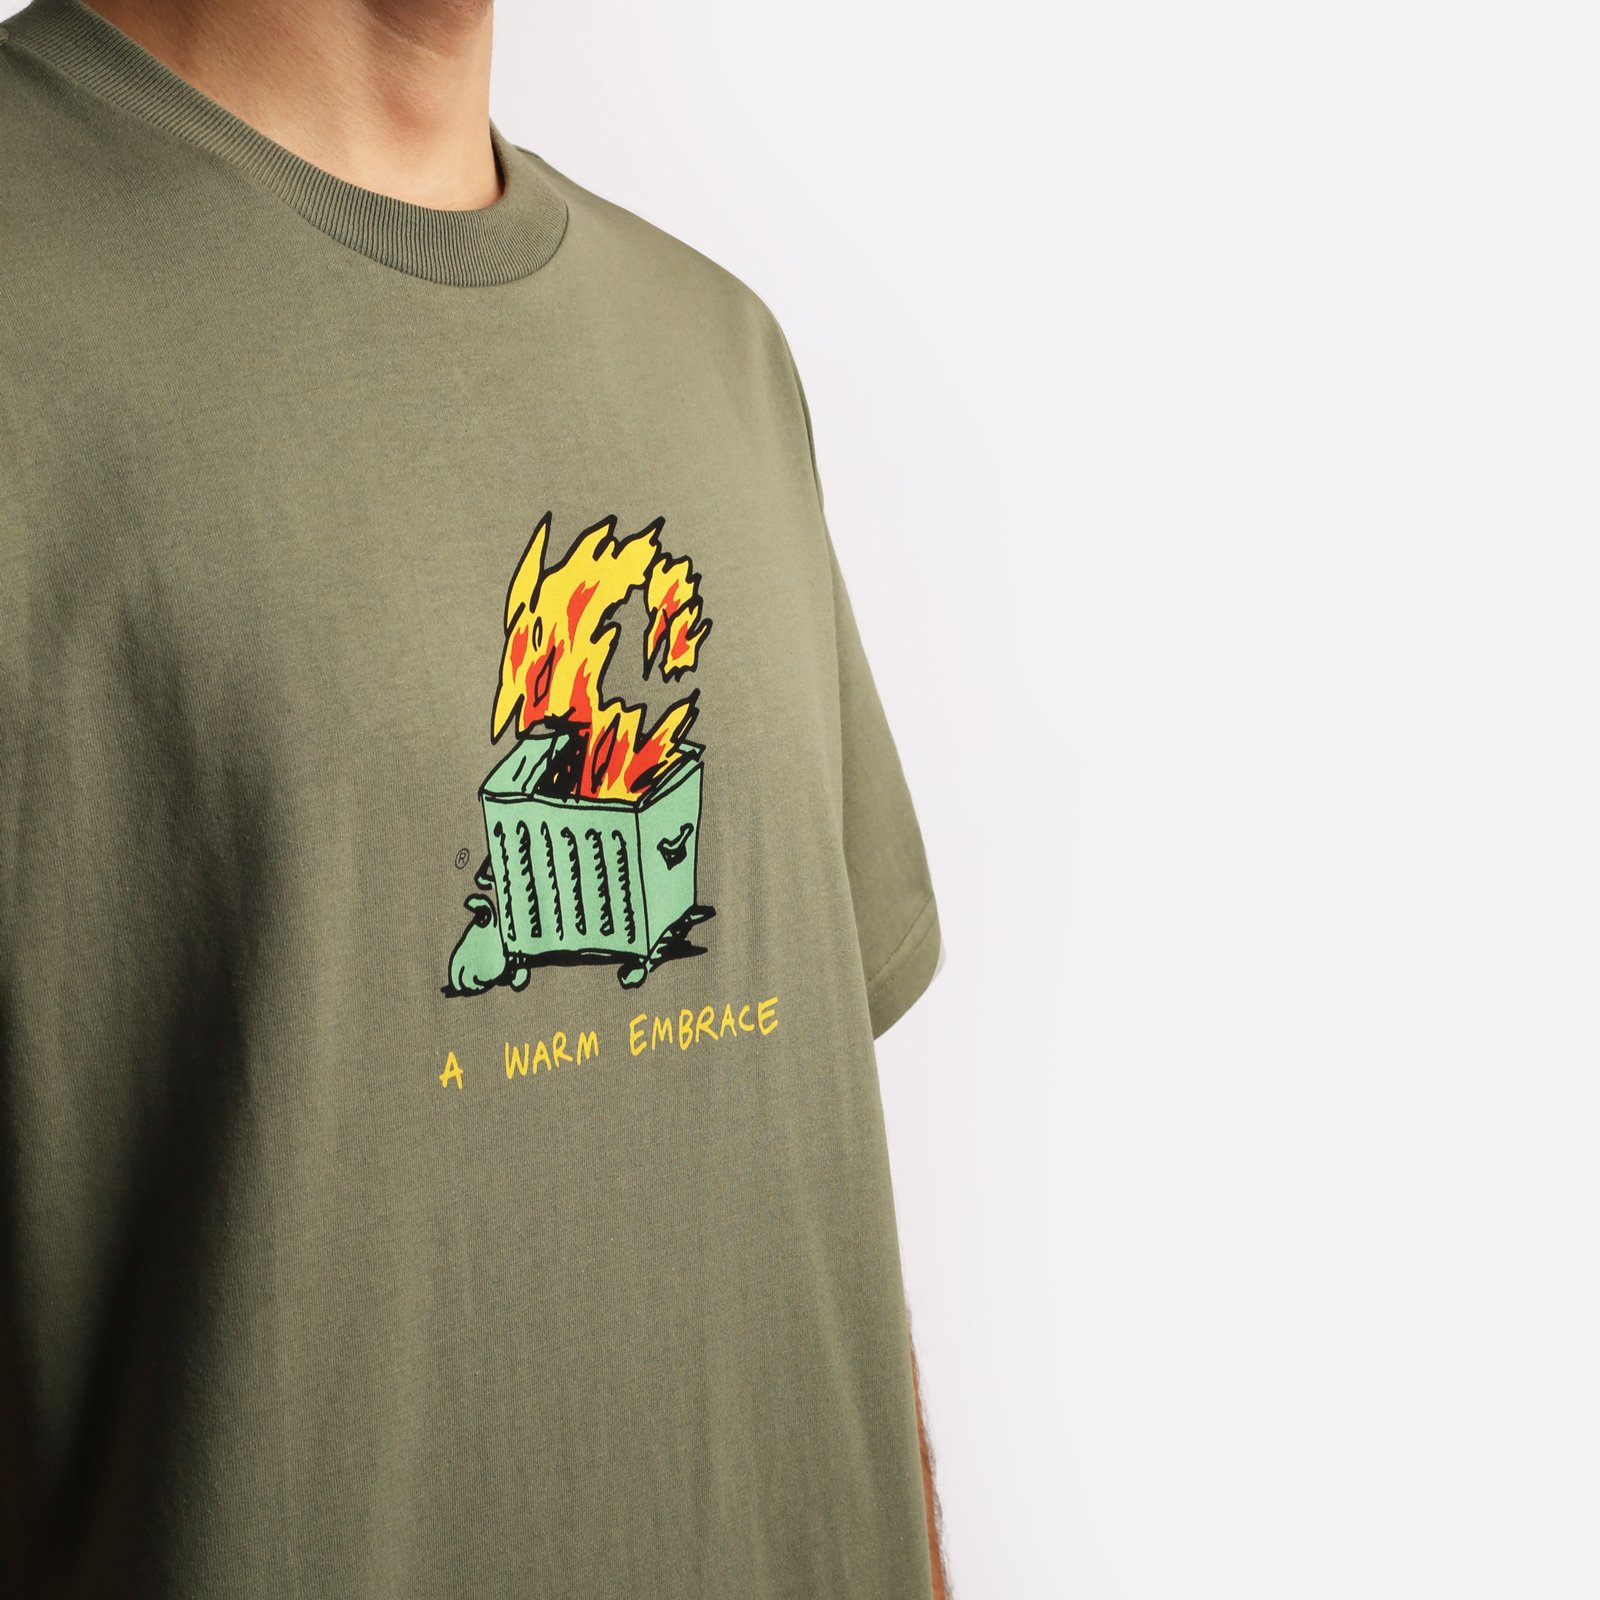 мужская футболка Carhartt WIP S/S Warm Embrace T-Shirt  (I032390-green)  - цена, описание, фото 4